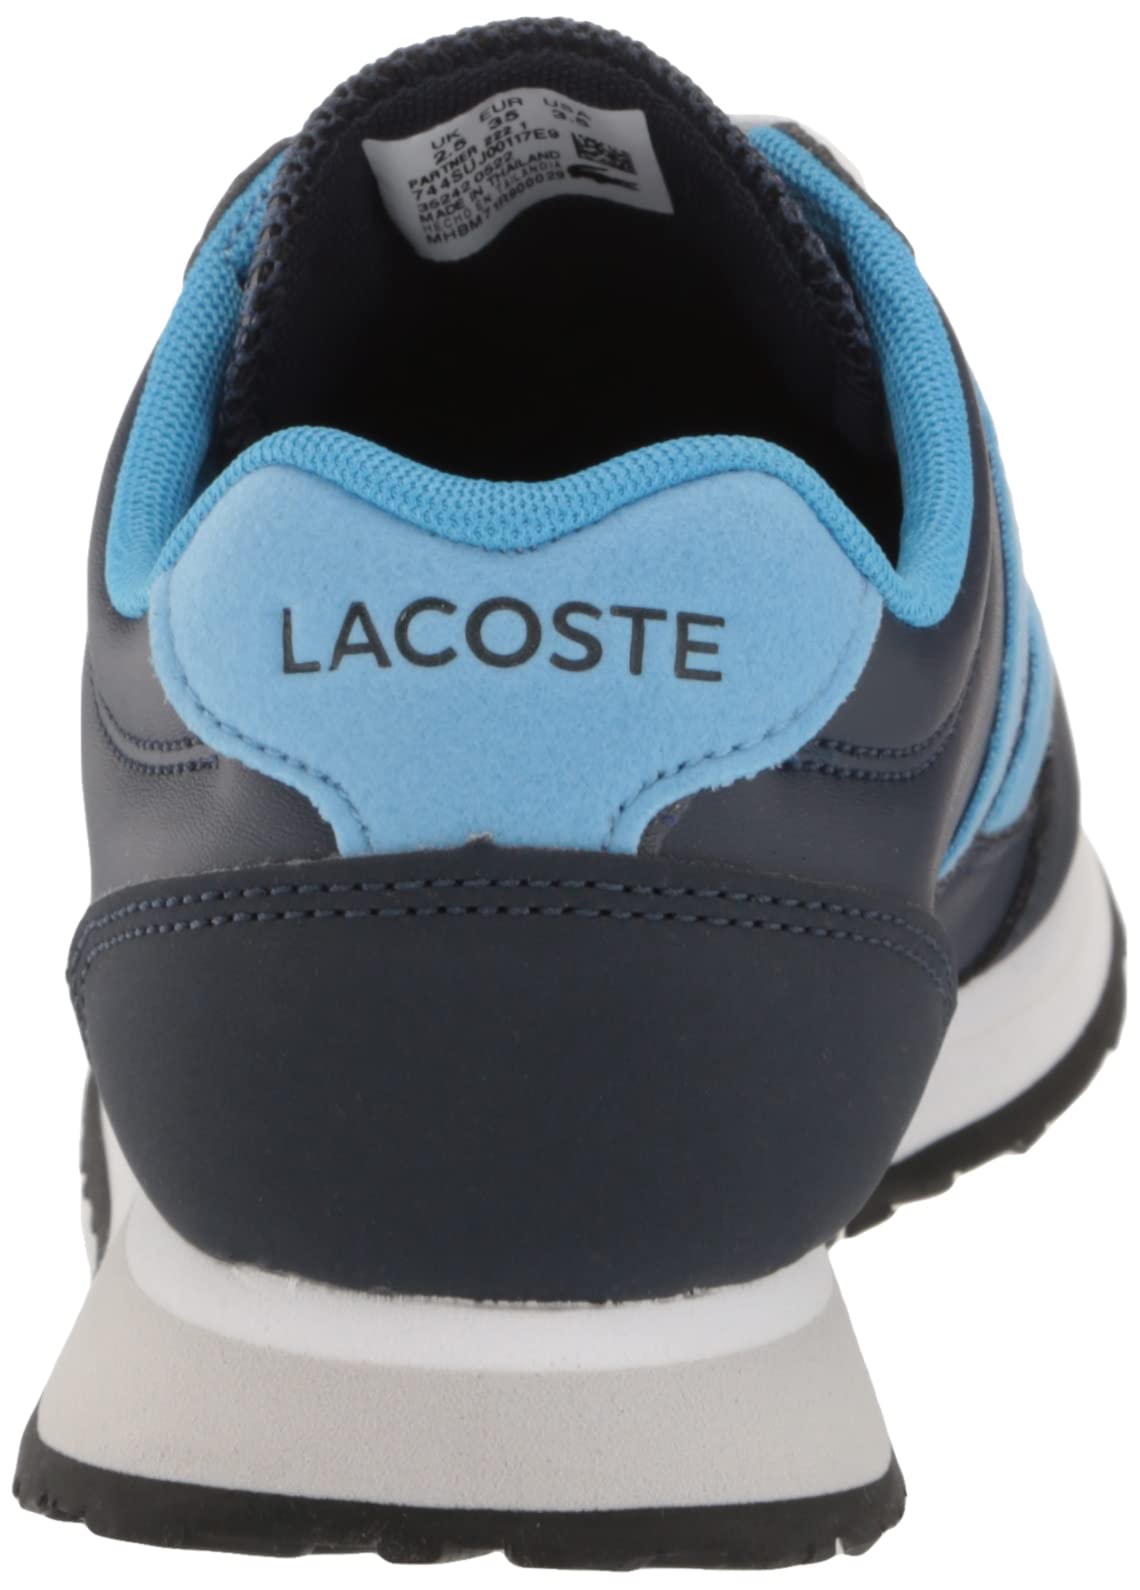 Lacoste Unisex-Child Partner Piste Sneaker